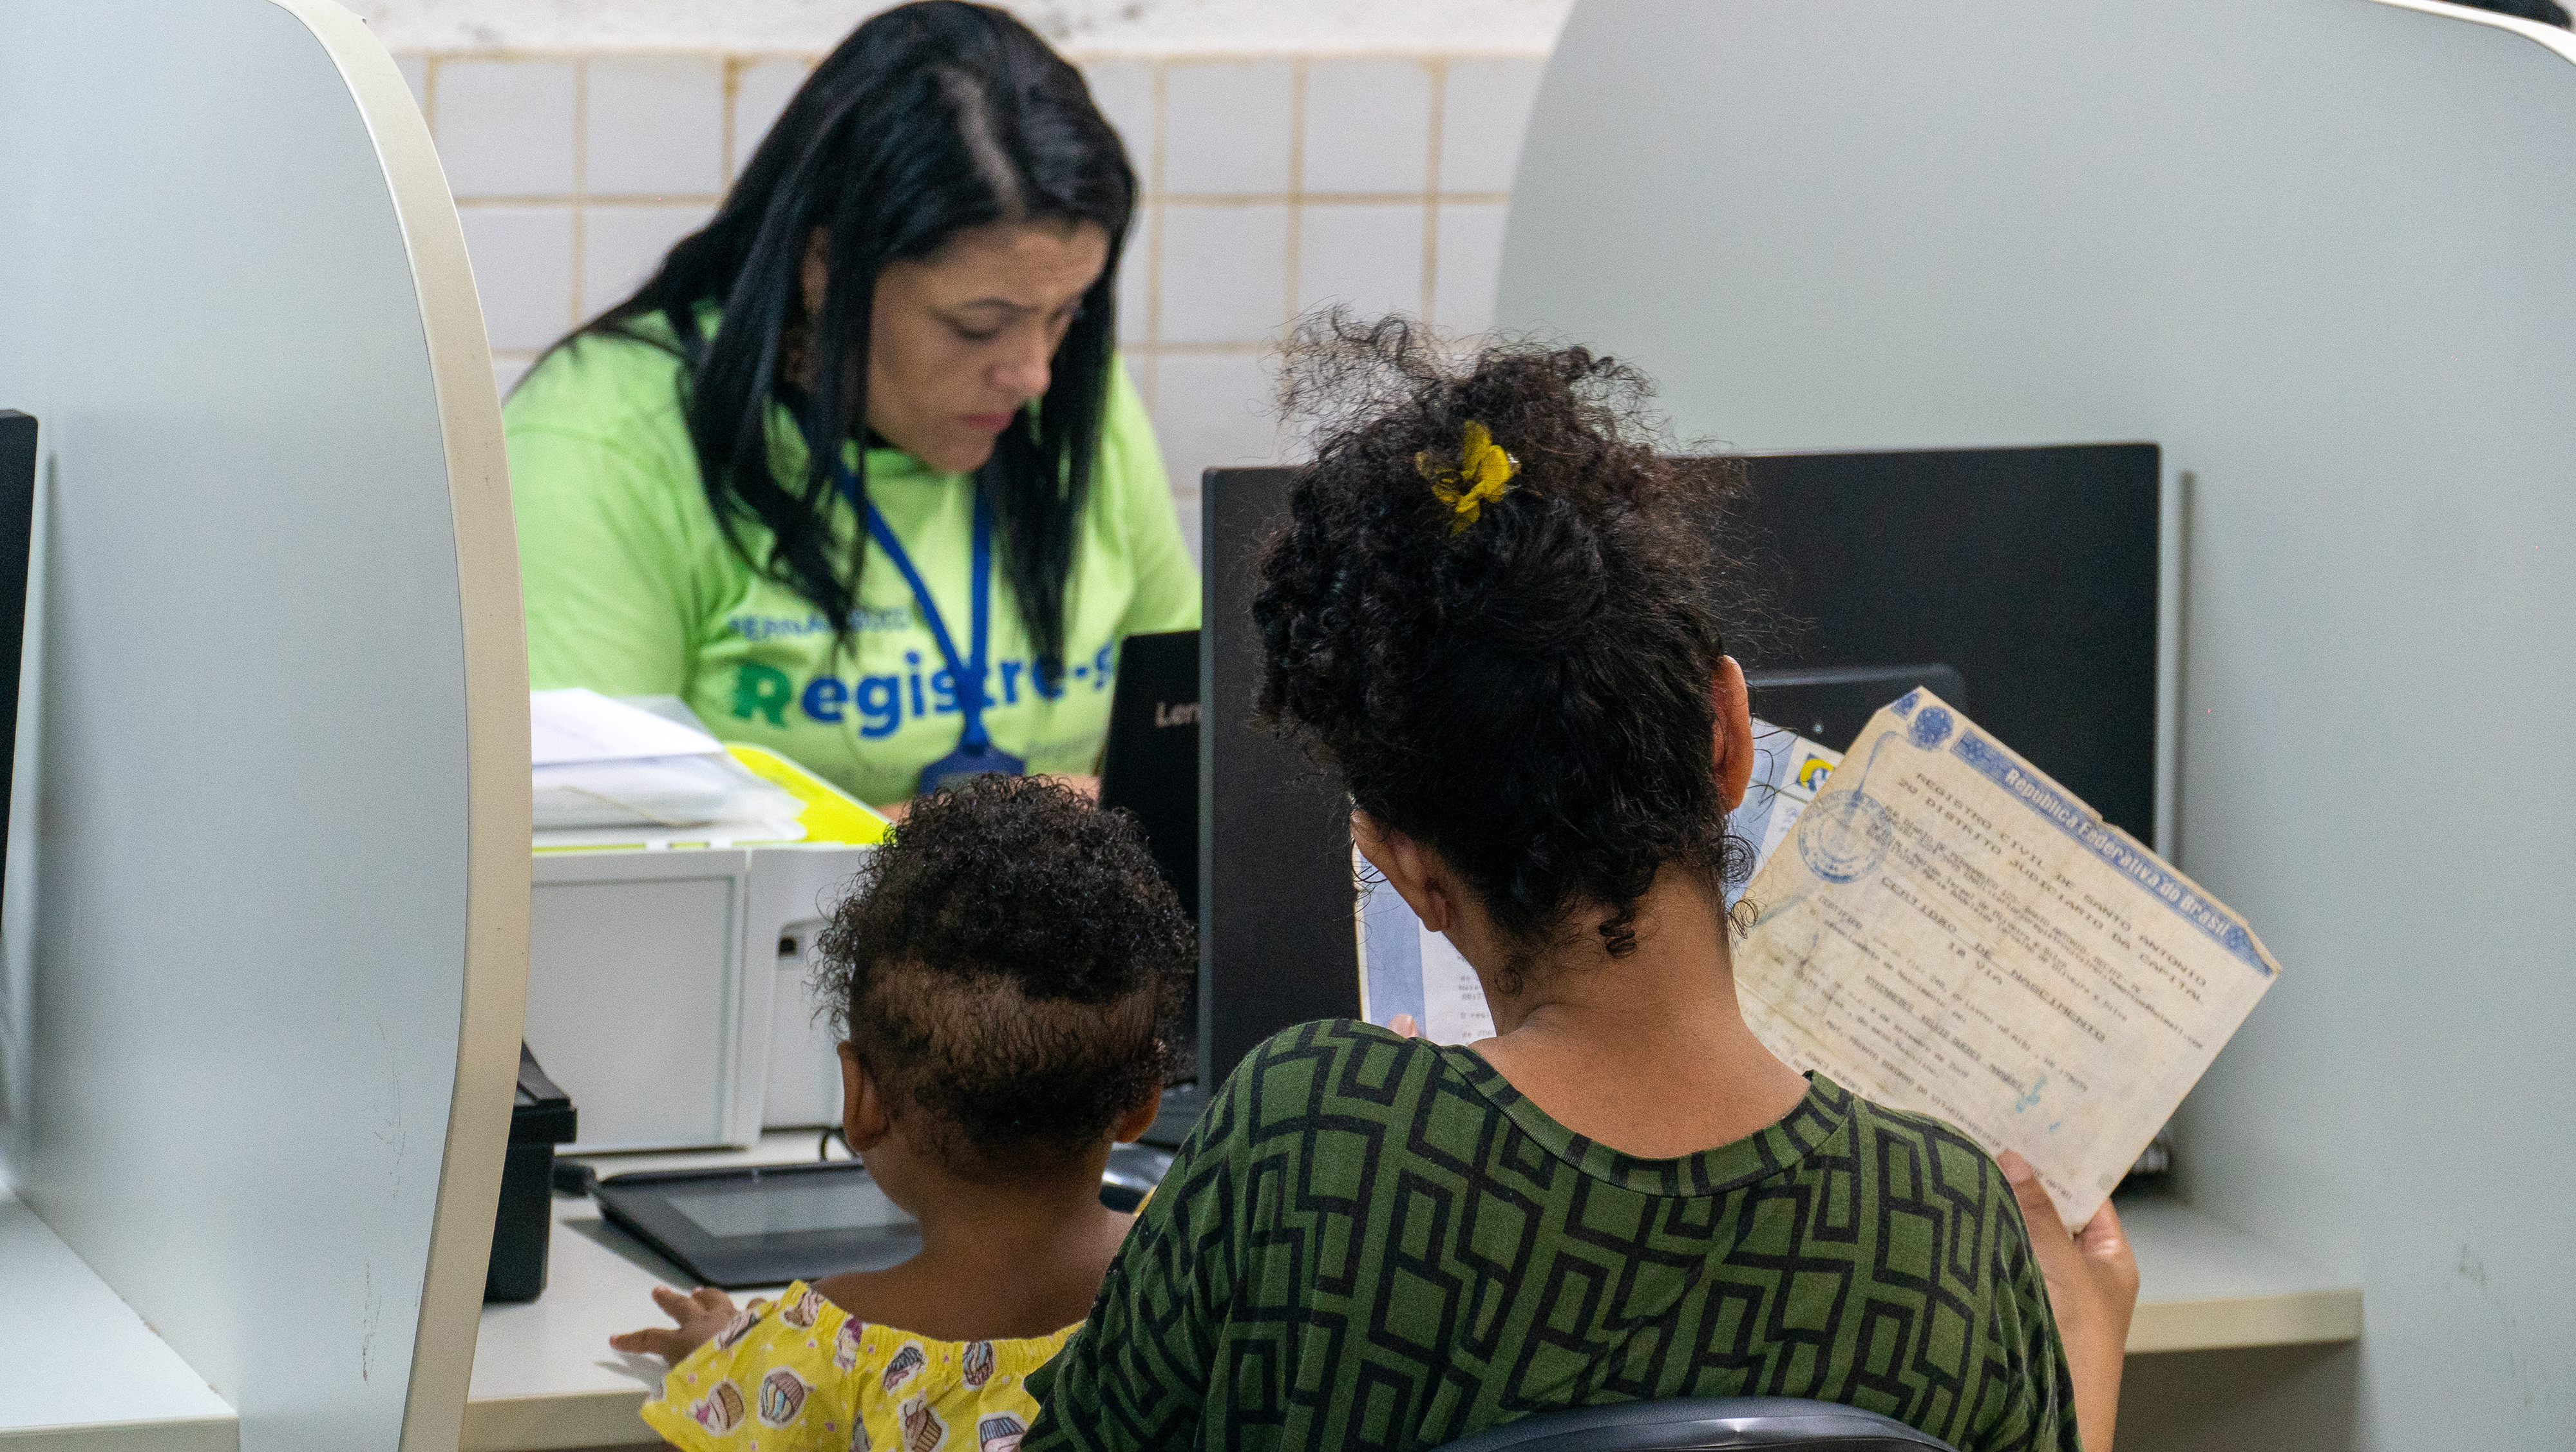 Mulher atendida durante a Semana Nacional do Registro Civil - Registre-se! no Recife.